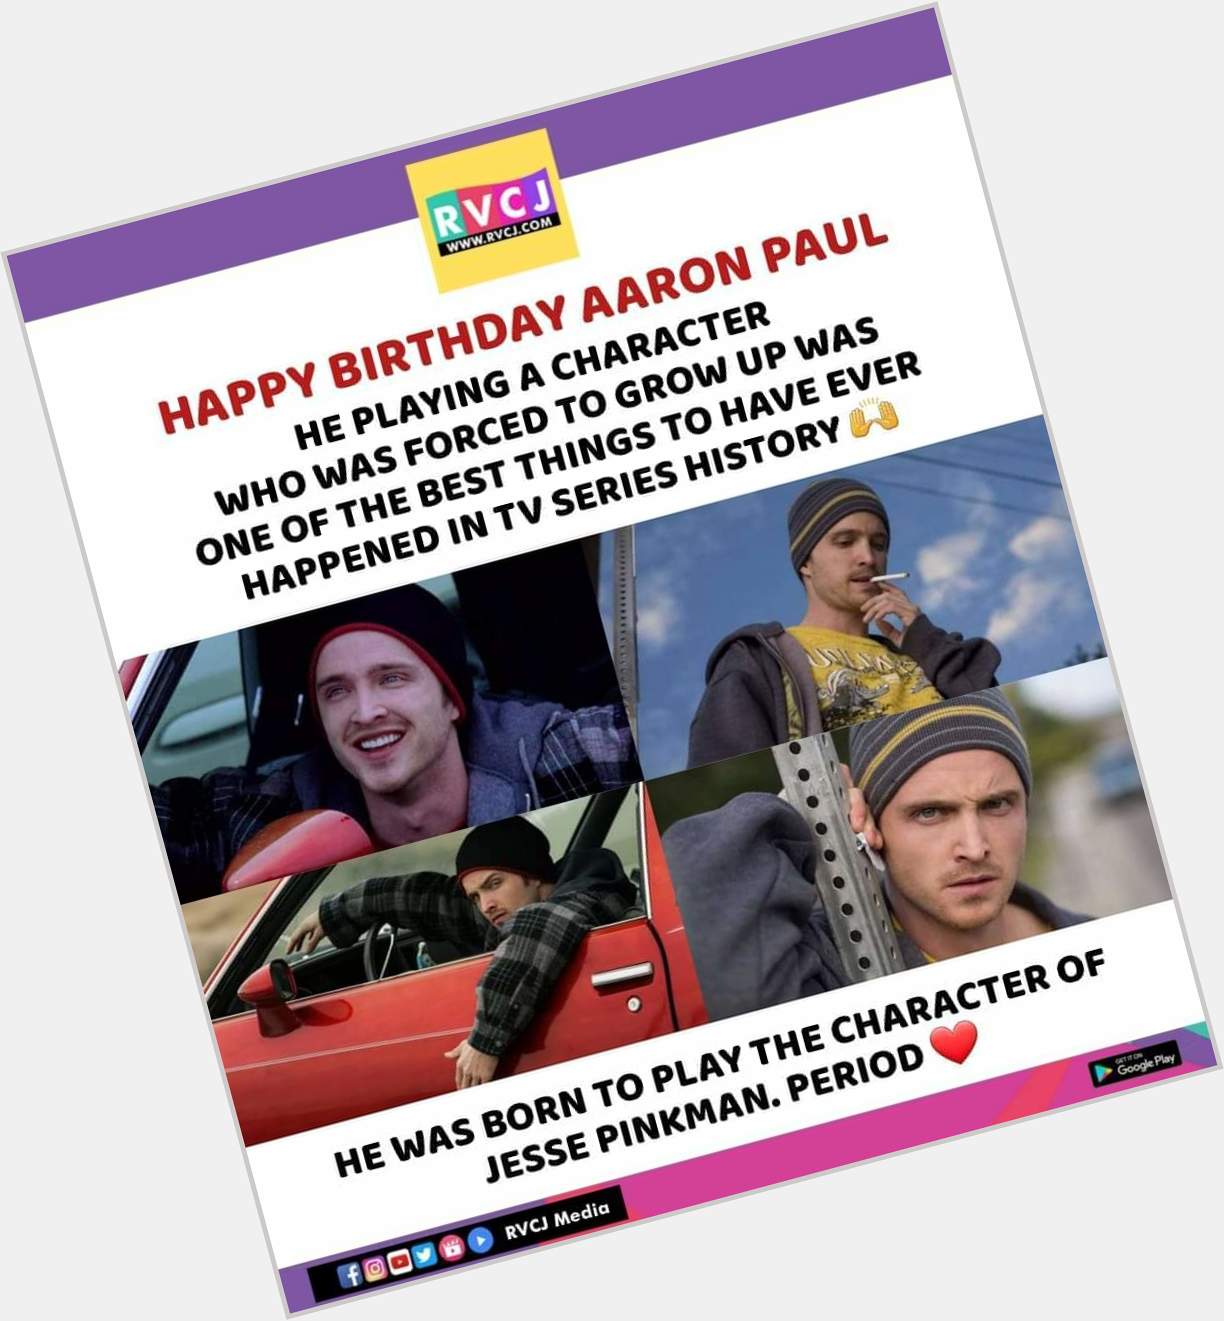 Happy birthday Aaron Paul   